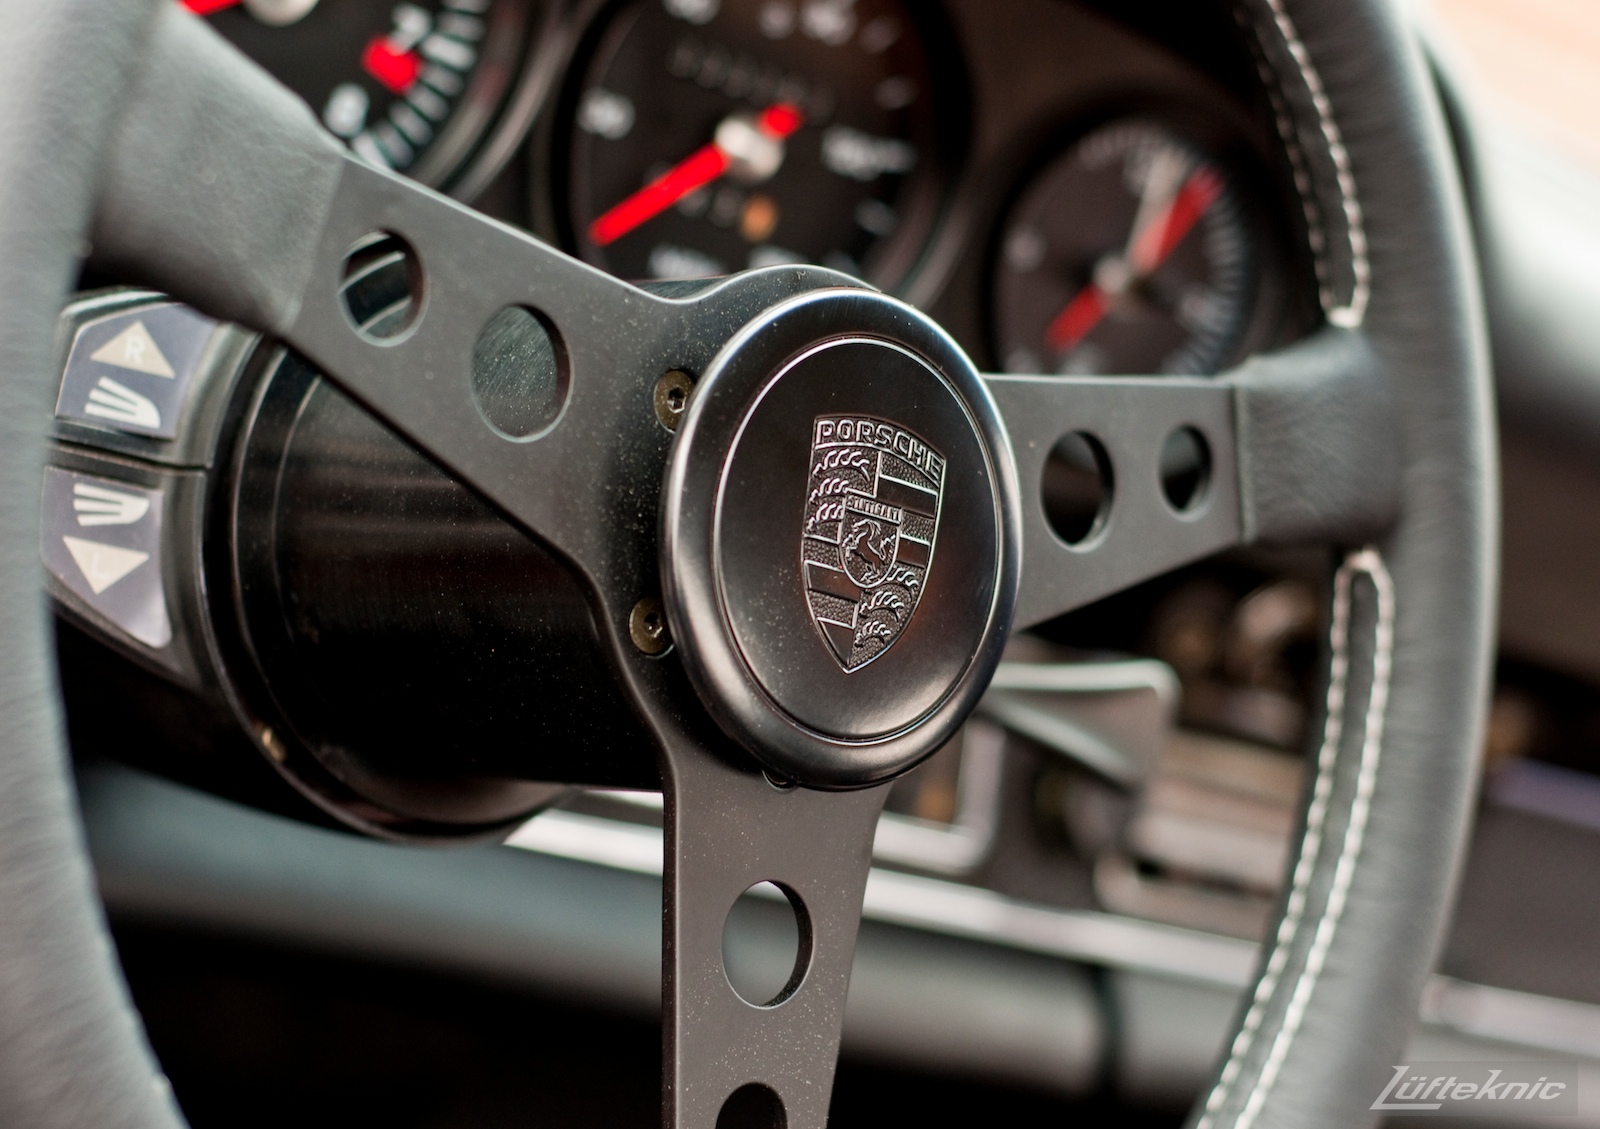 Momo Prototipo steering wheel with Porsche horn button.